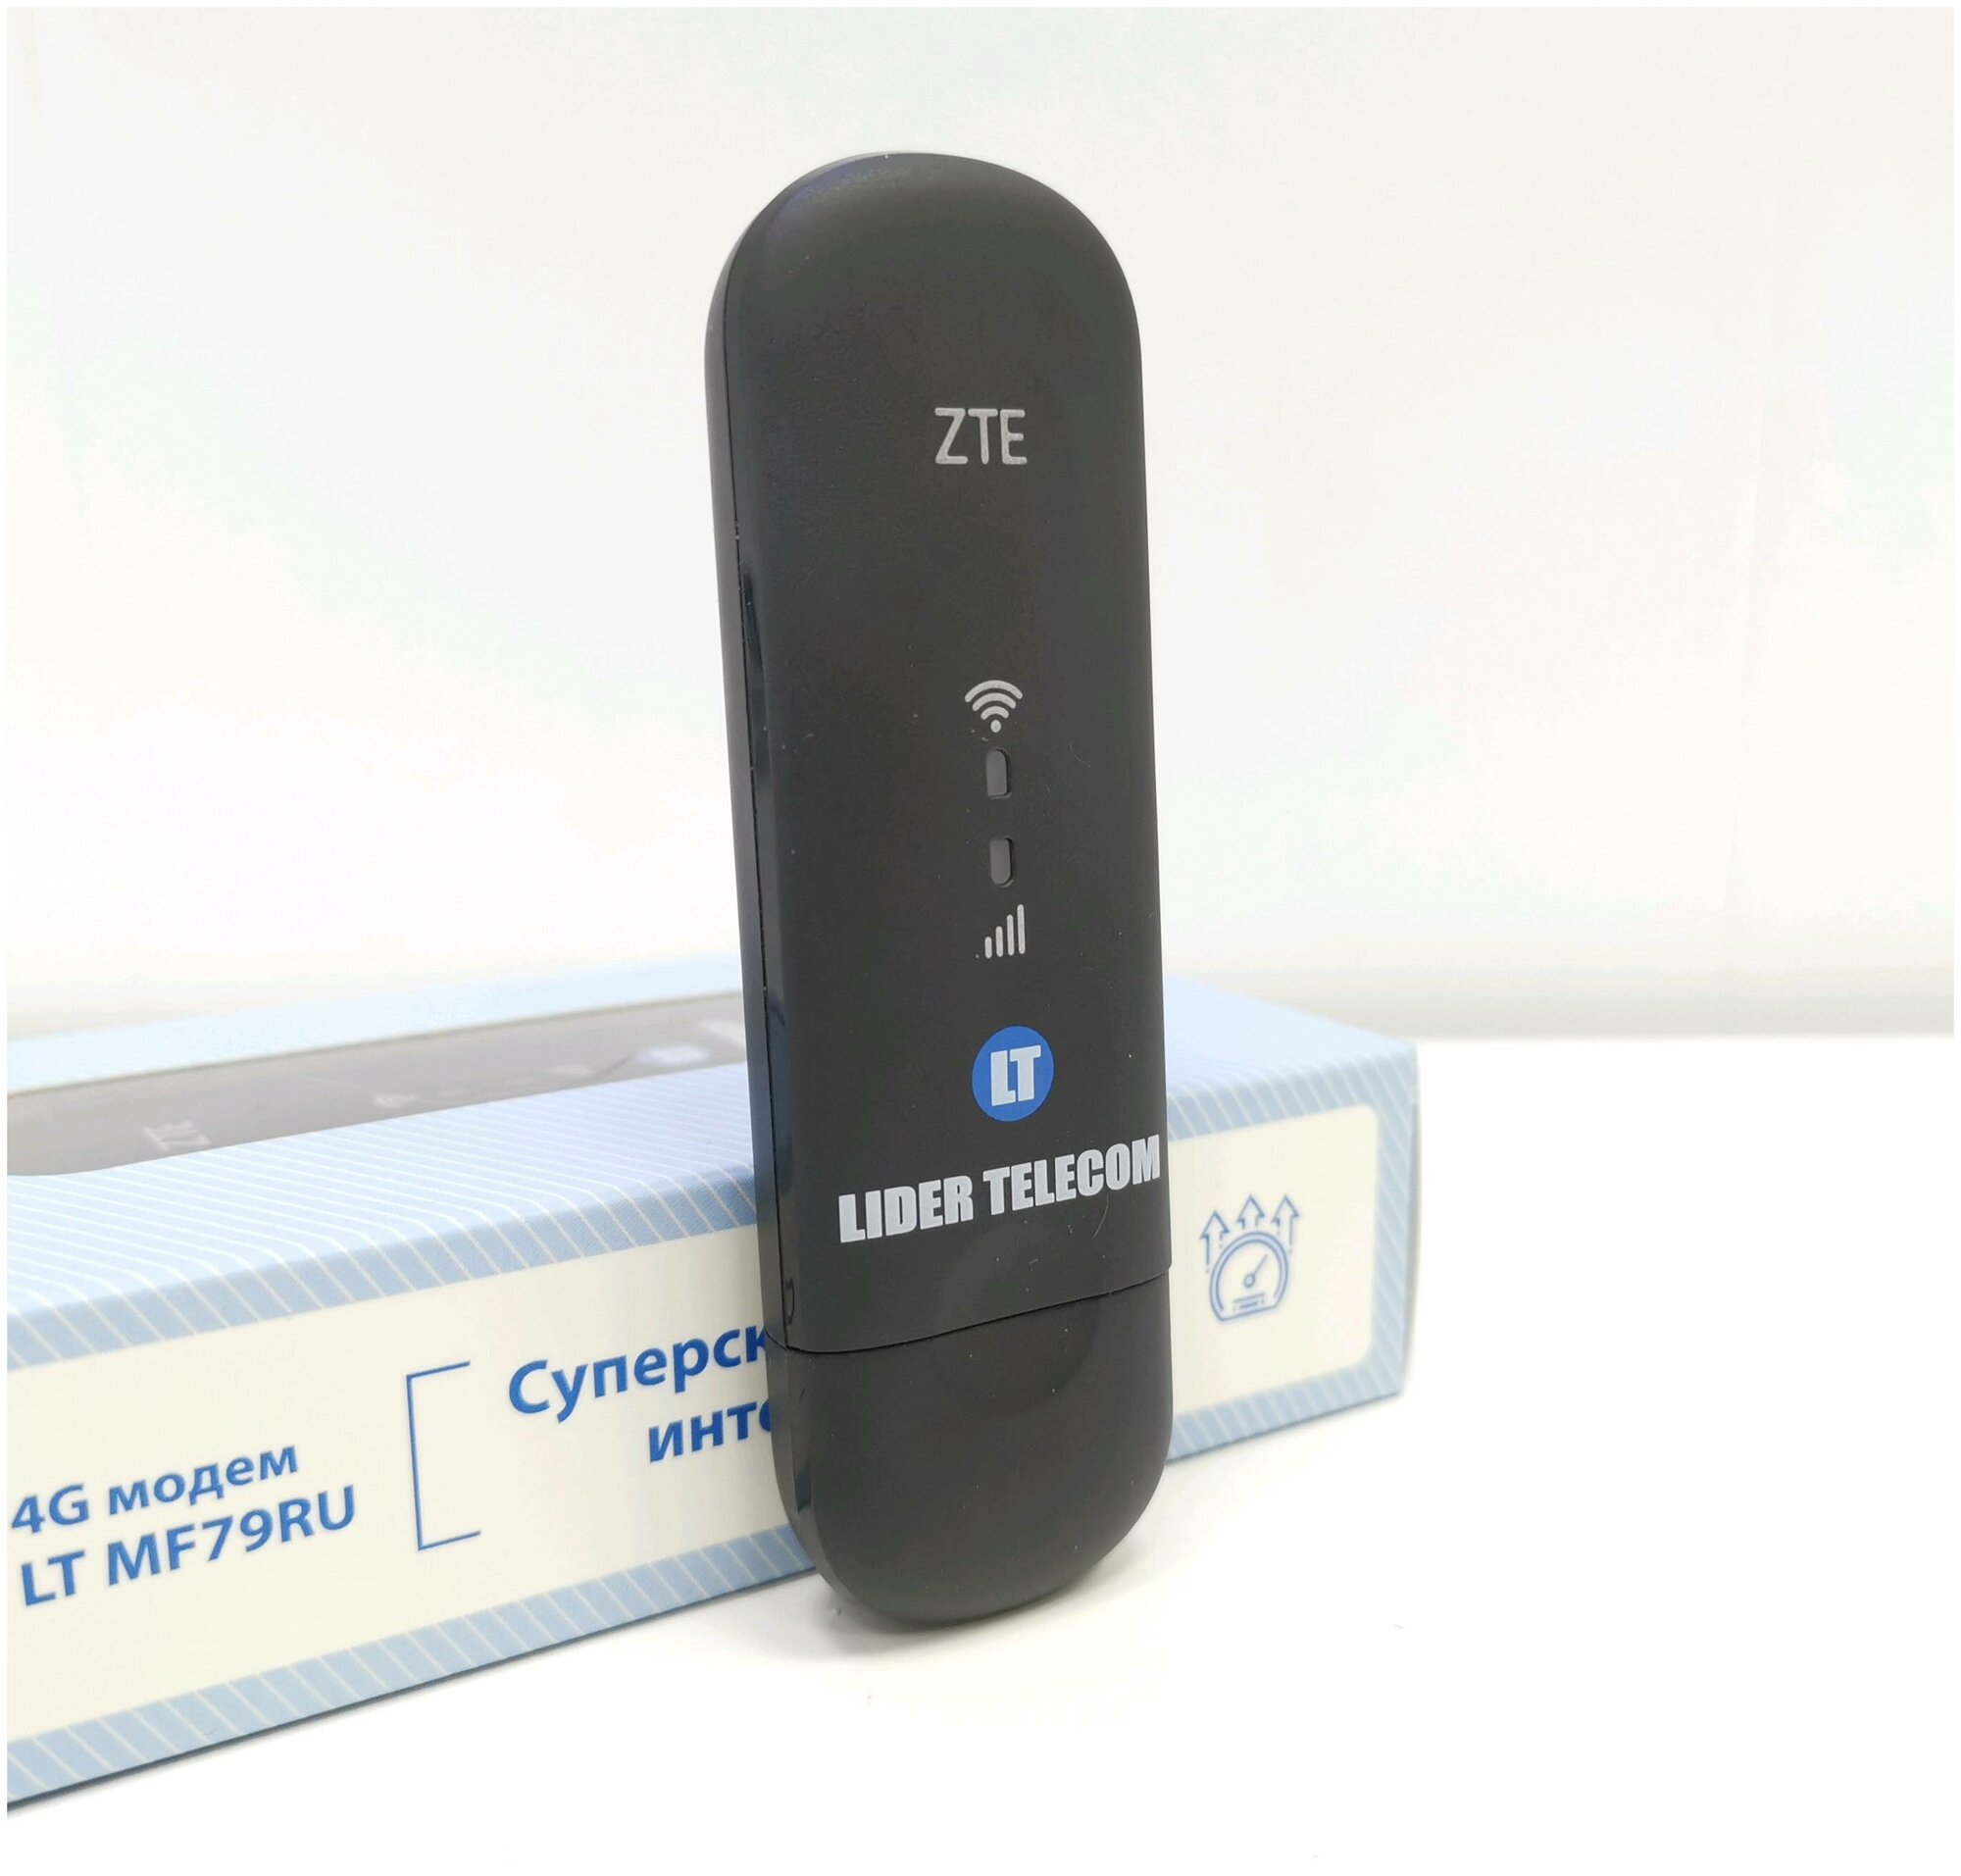 4G WiFi Роутер - Модем ZTE 79U PRO TTL iMEi под Безлимитный Интернет LTE MiMO TS9 Универсальный Любой Оператор как Huawei